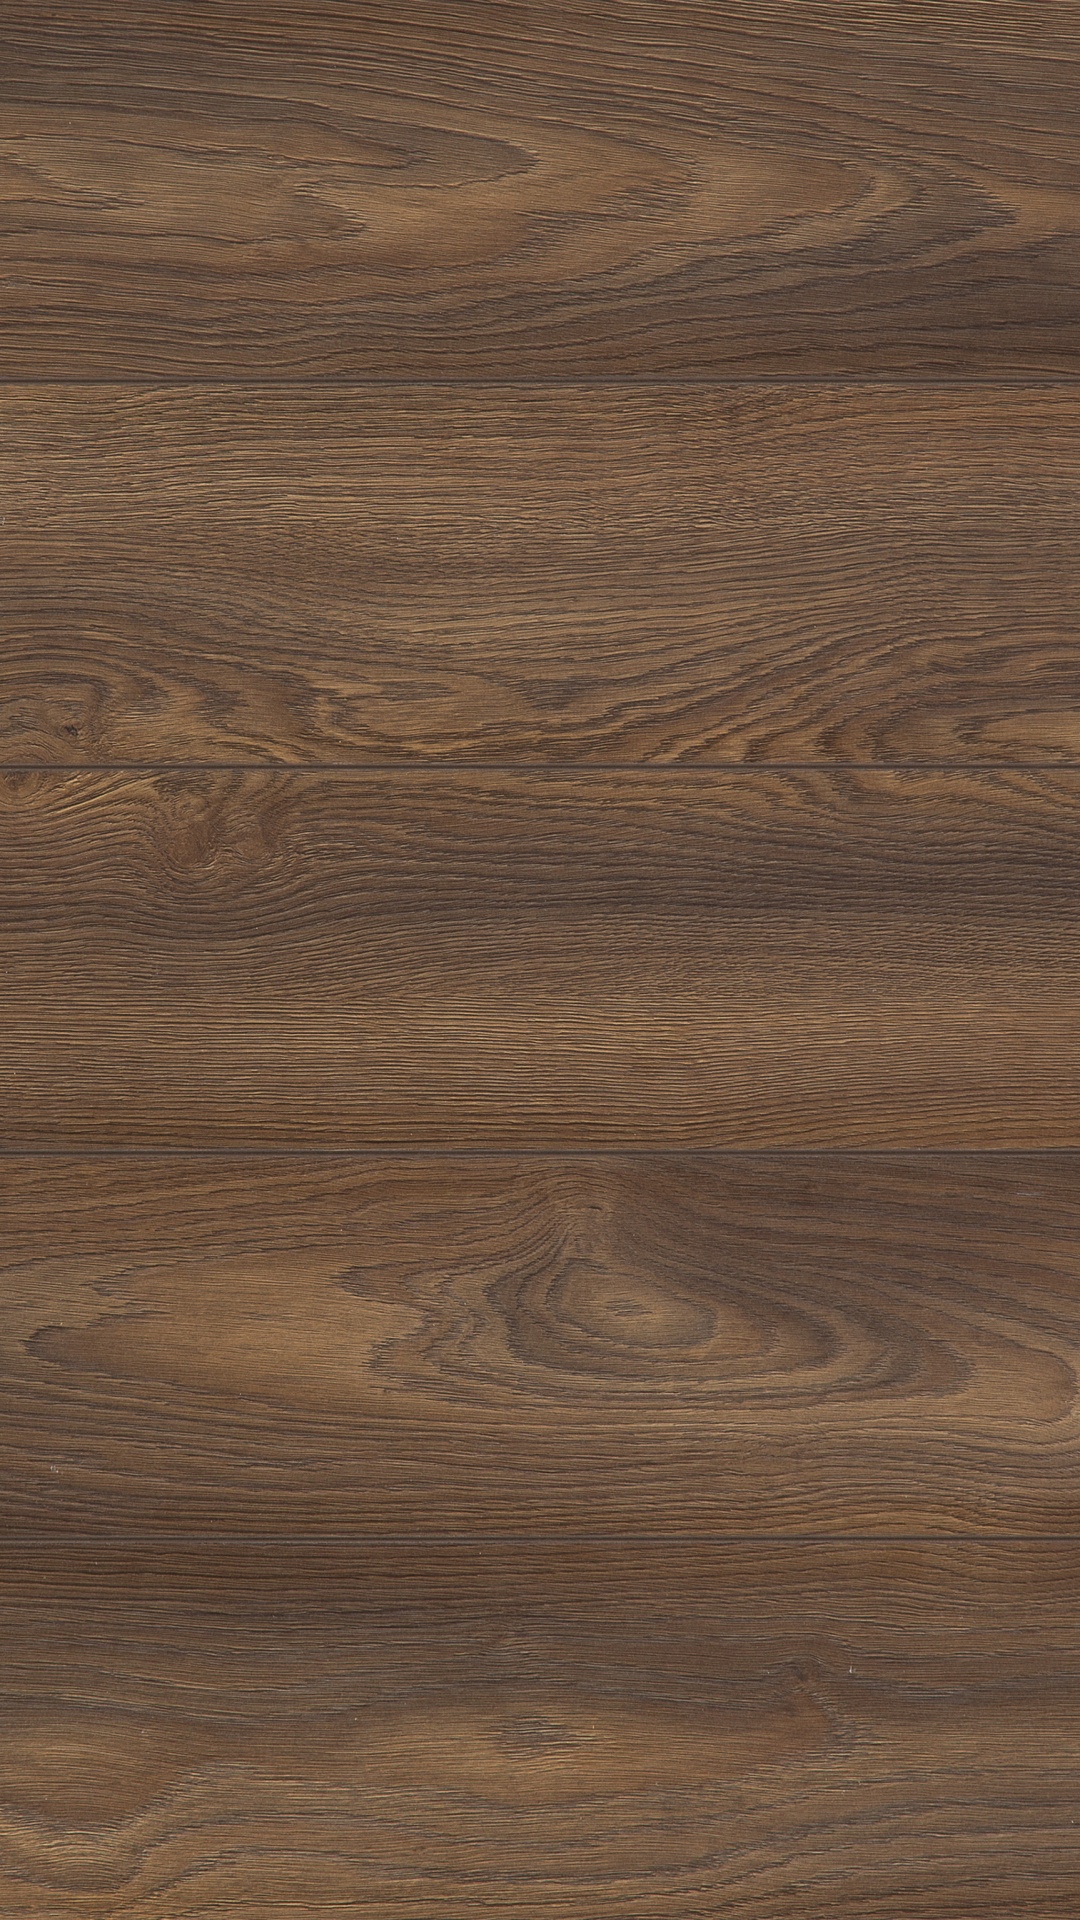 Brown Wooden Parquet Floor Tiles. Wallpaper in 1080x1920 Resolution